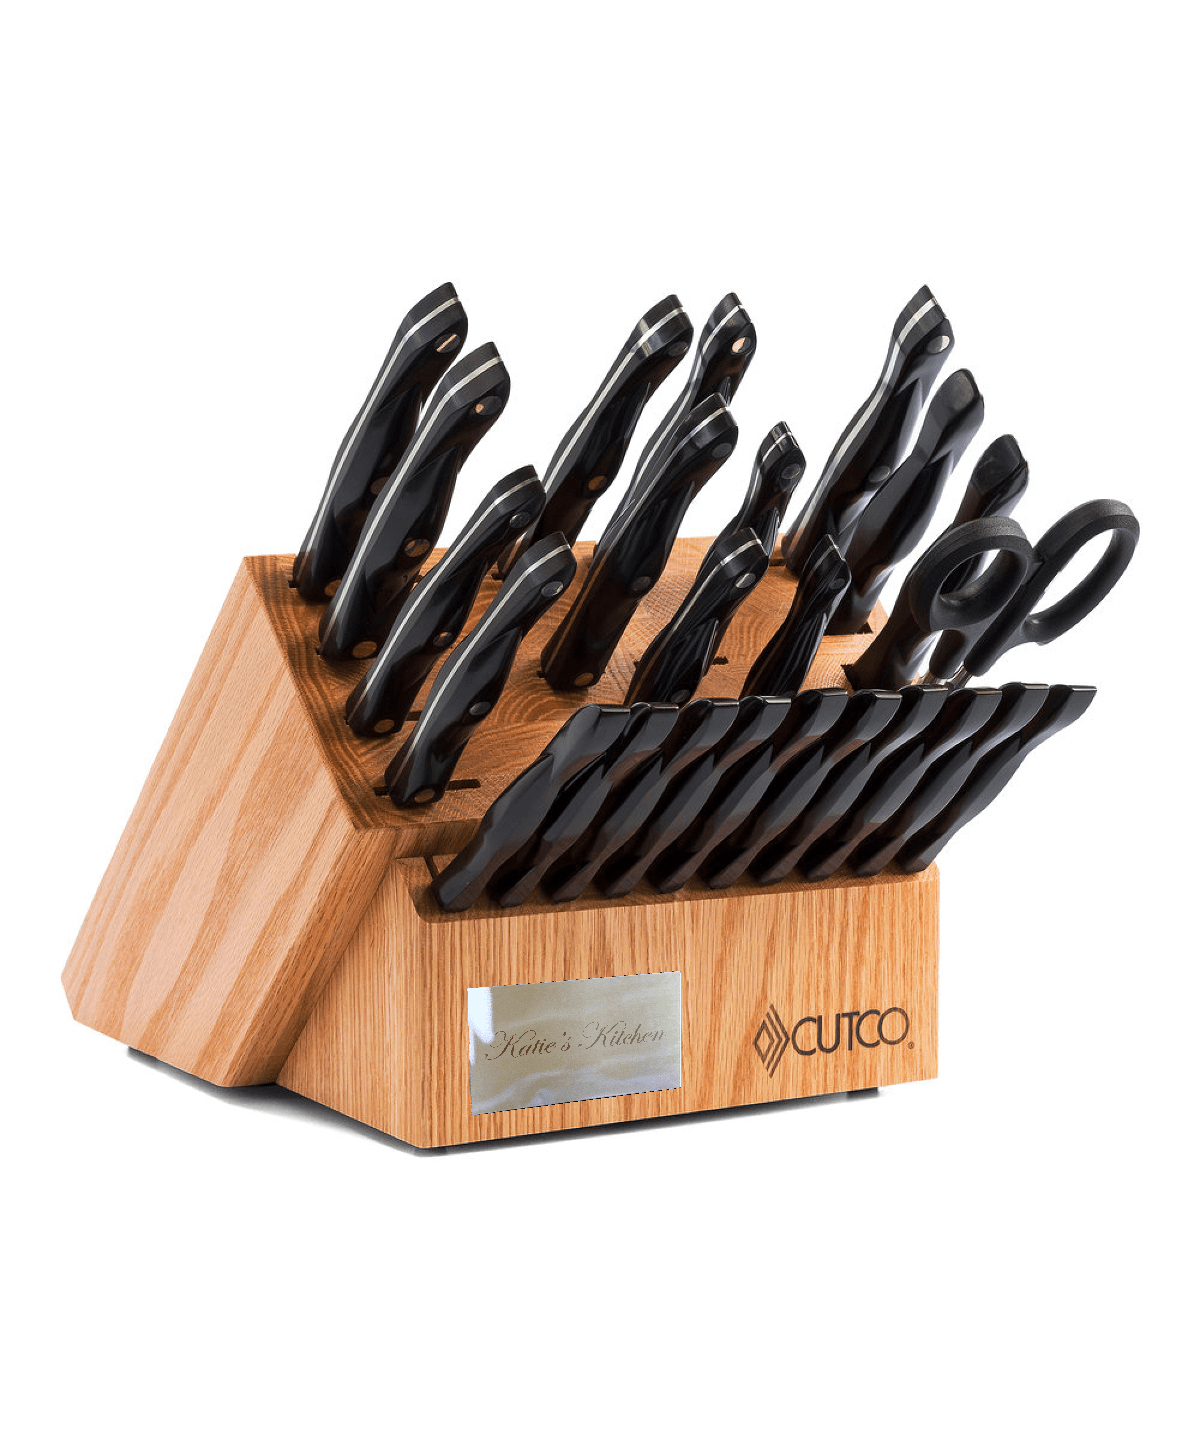 Cutco Knives – Unique Custom Gifts